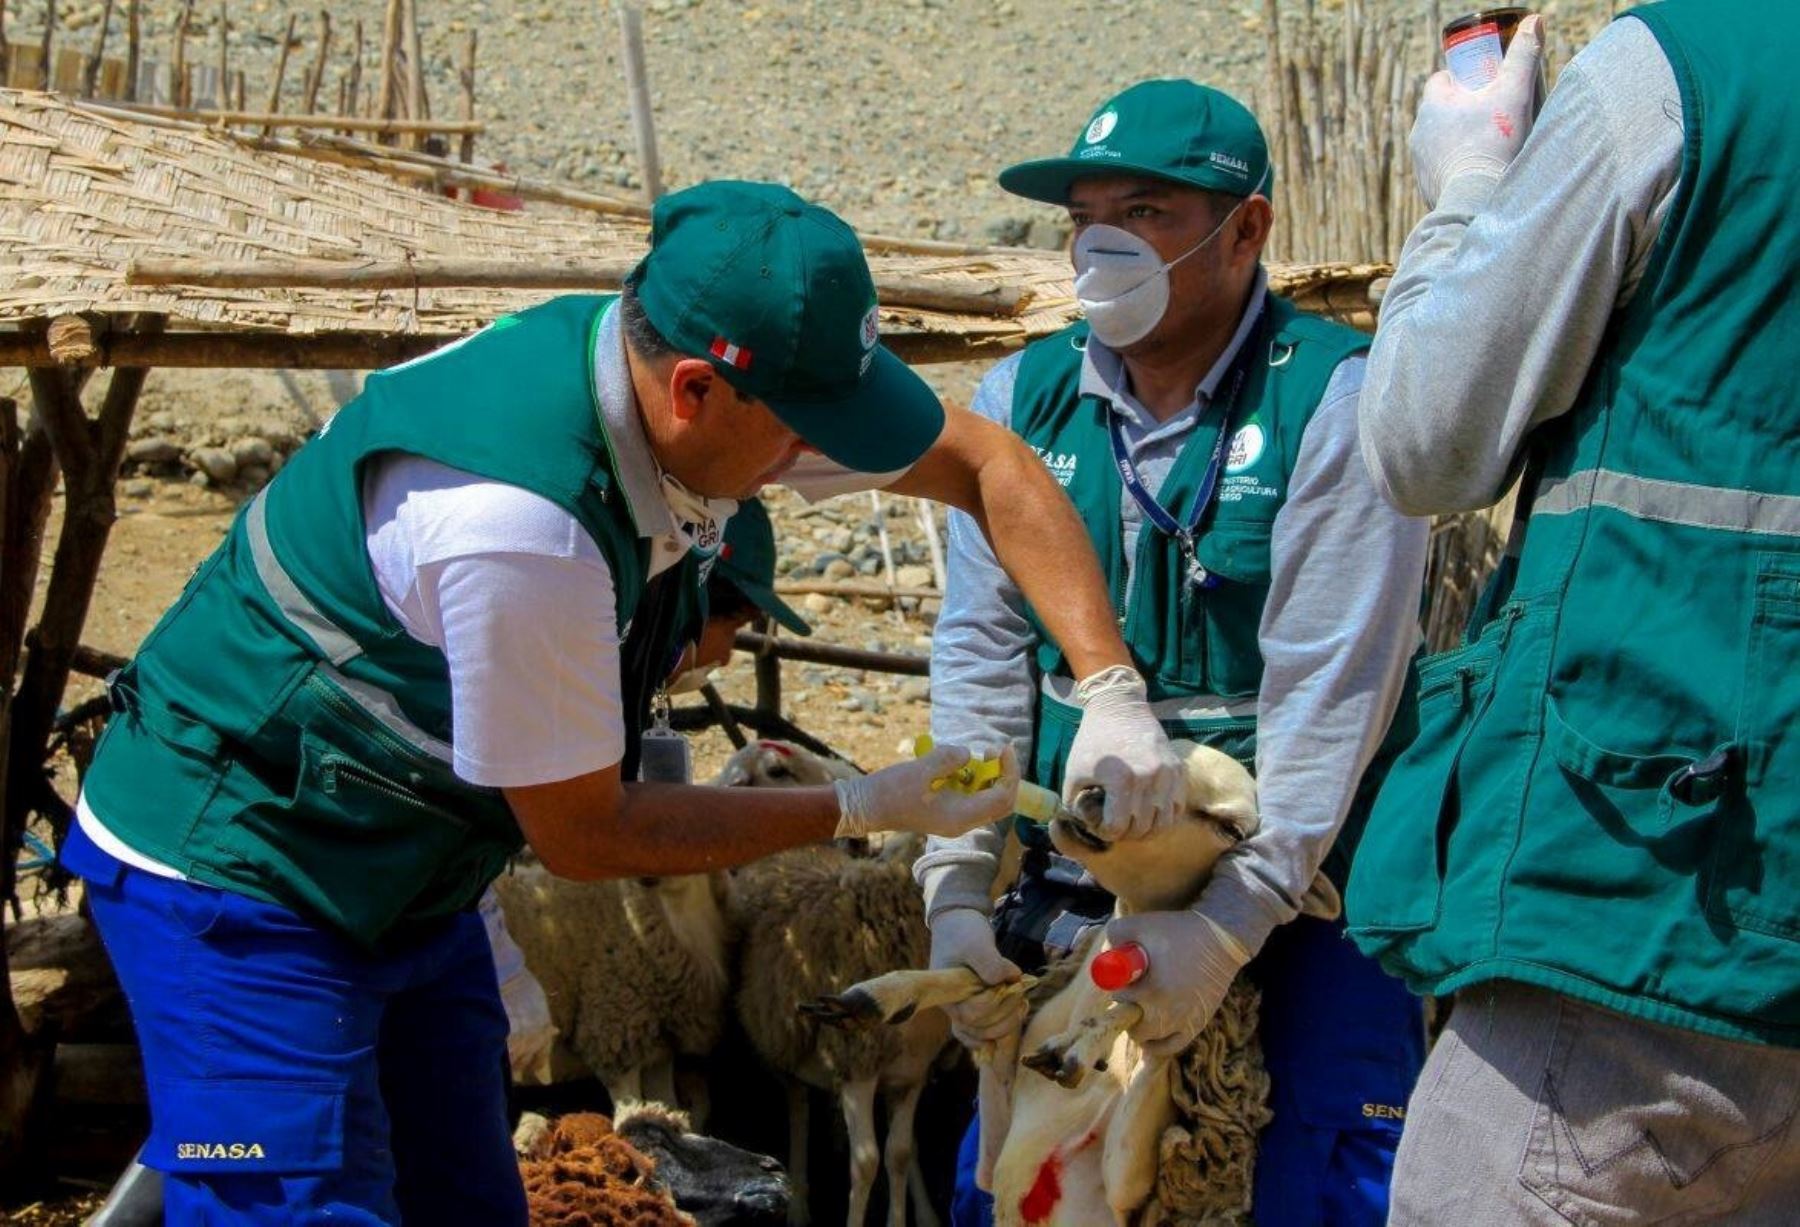 Senasa atiende 250 animales en Huarmey frente a la alerta sanitaria. ANDINA